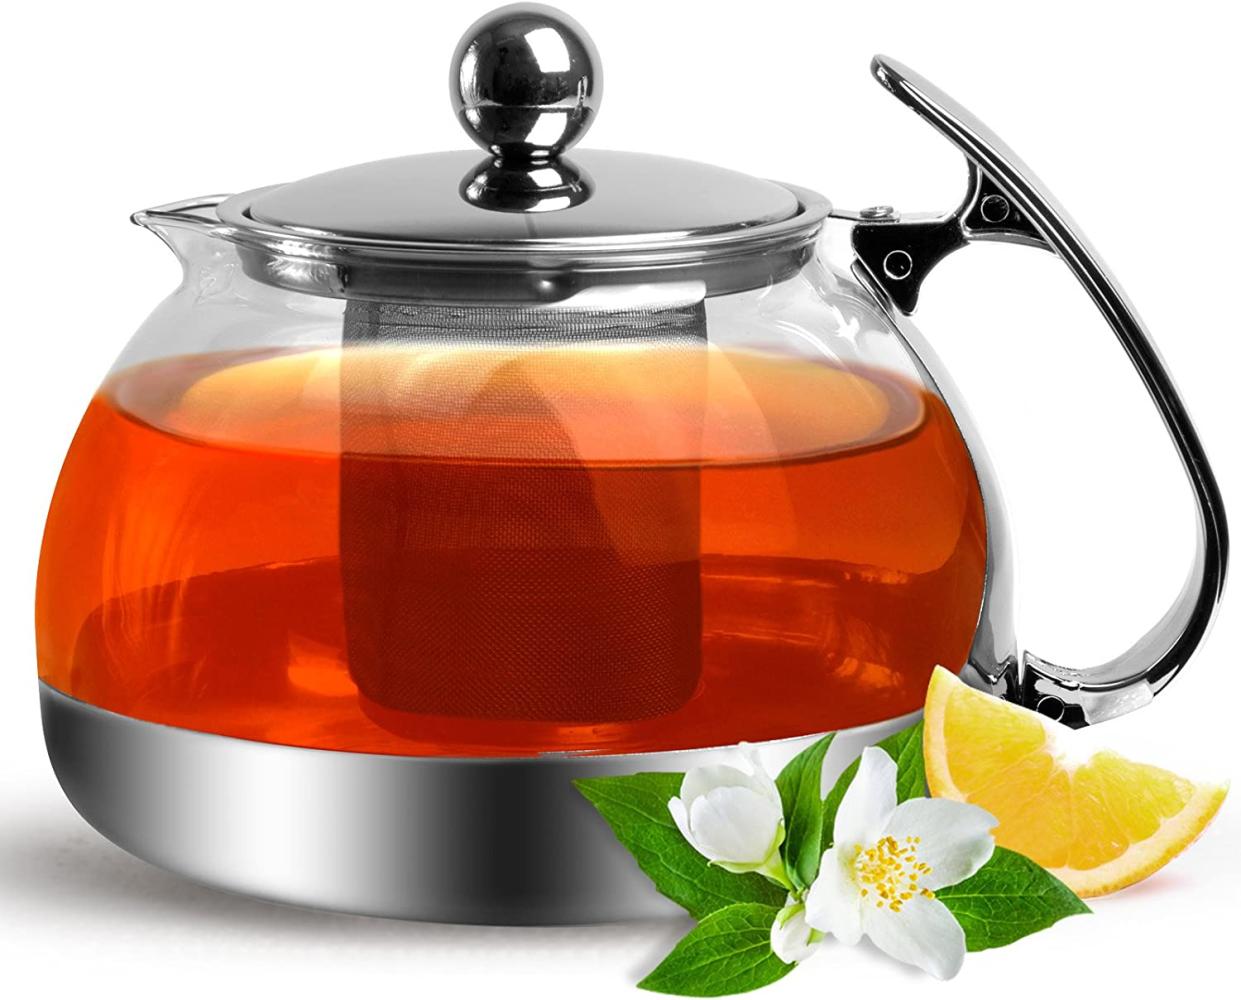 Deuba Teekanne mit Sieb aus Edelstahl Glas 1,2 Liter - Teebreiter Teekannen Kanne mit herausnehmbarem Siebeinsatz Bild 1